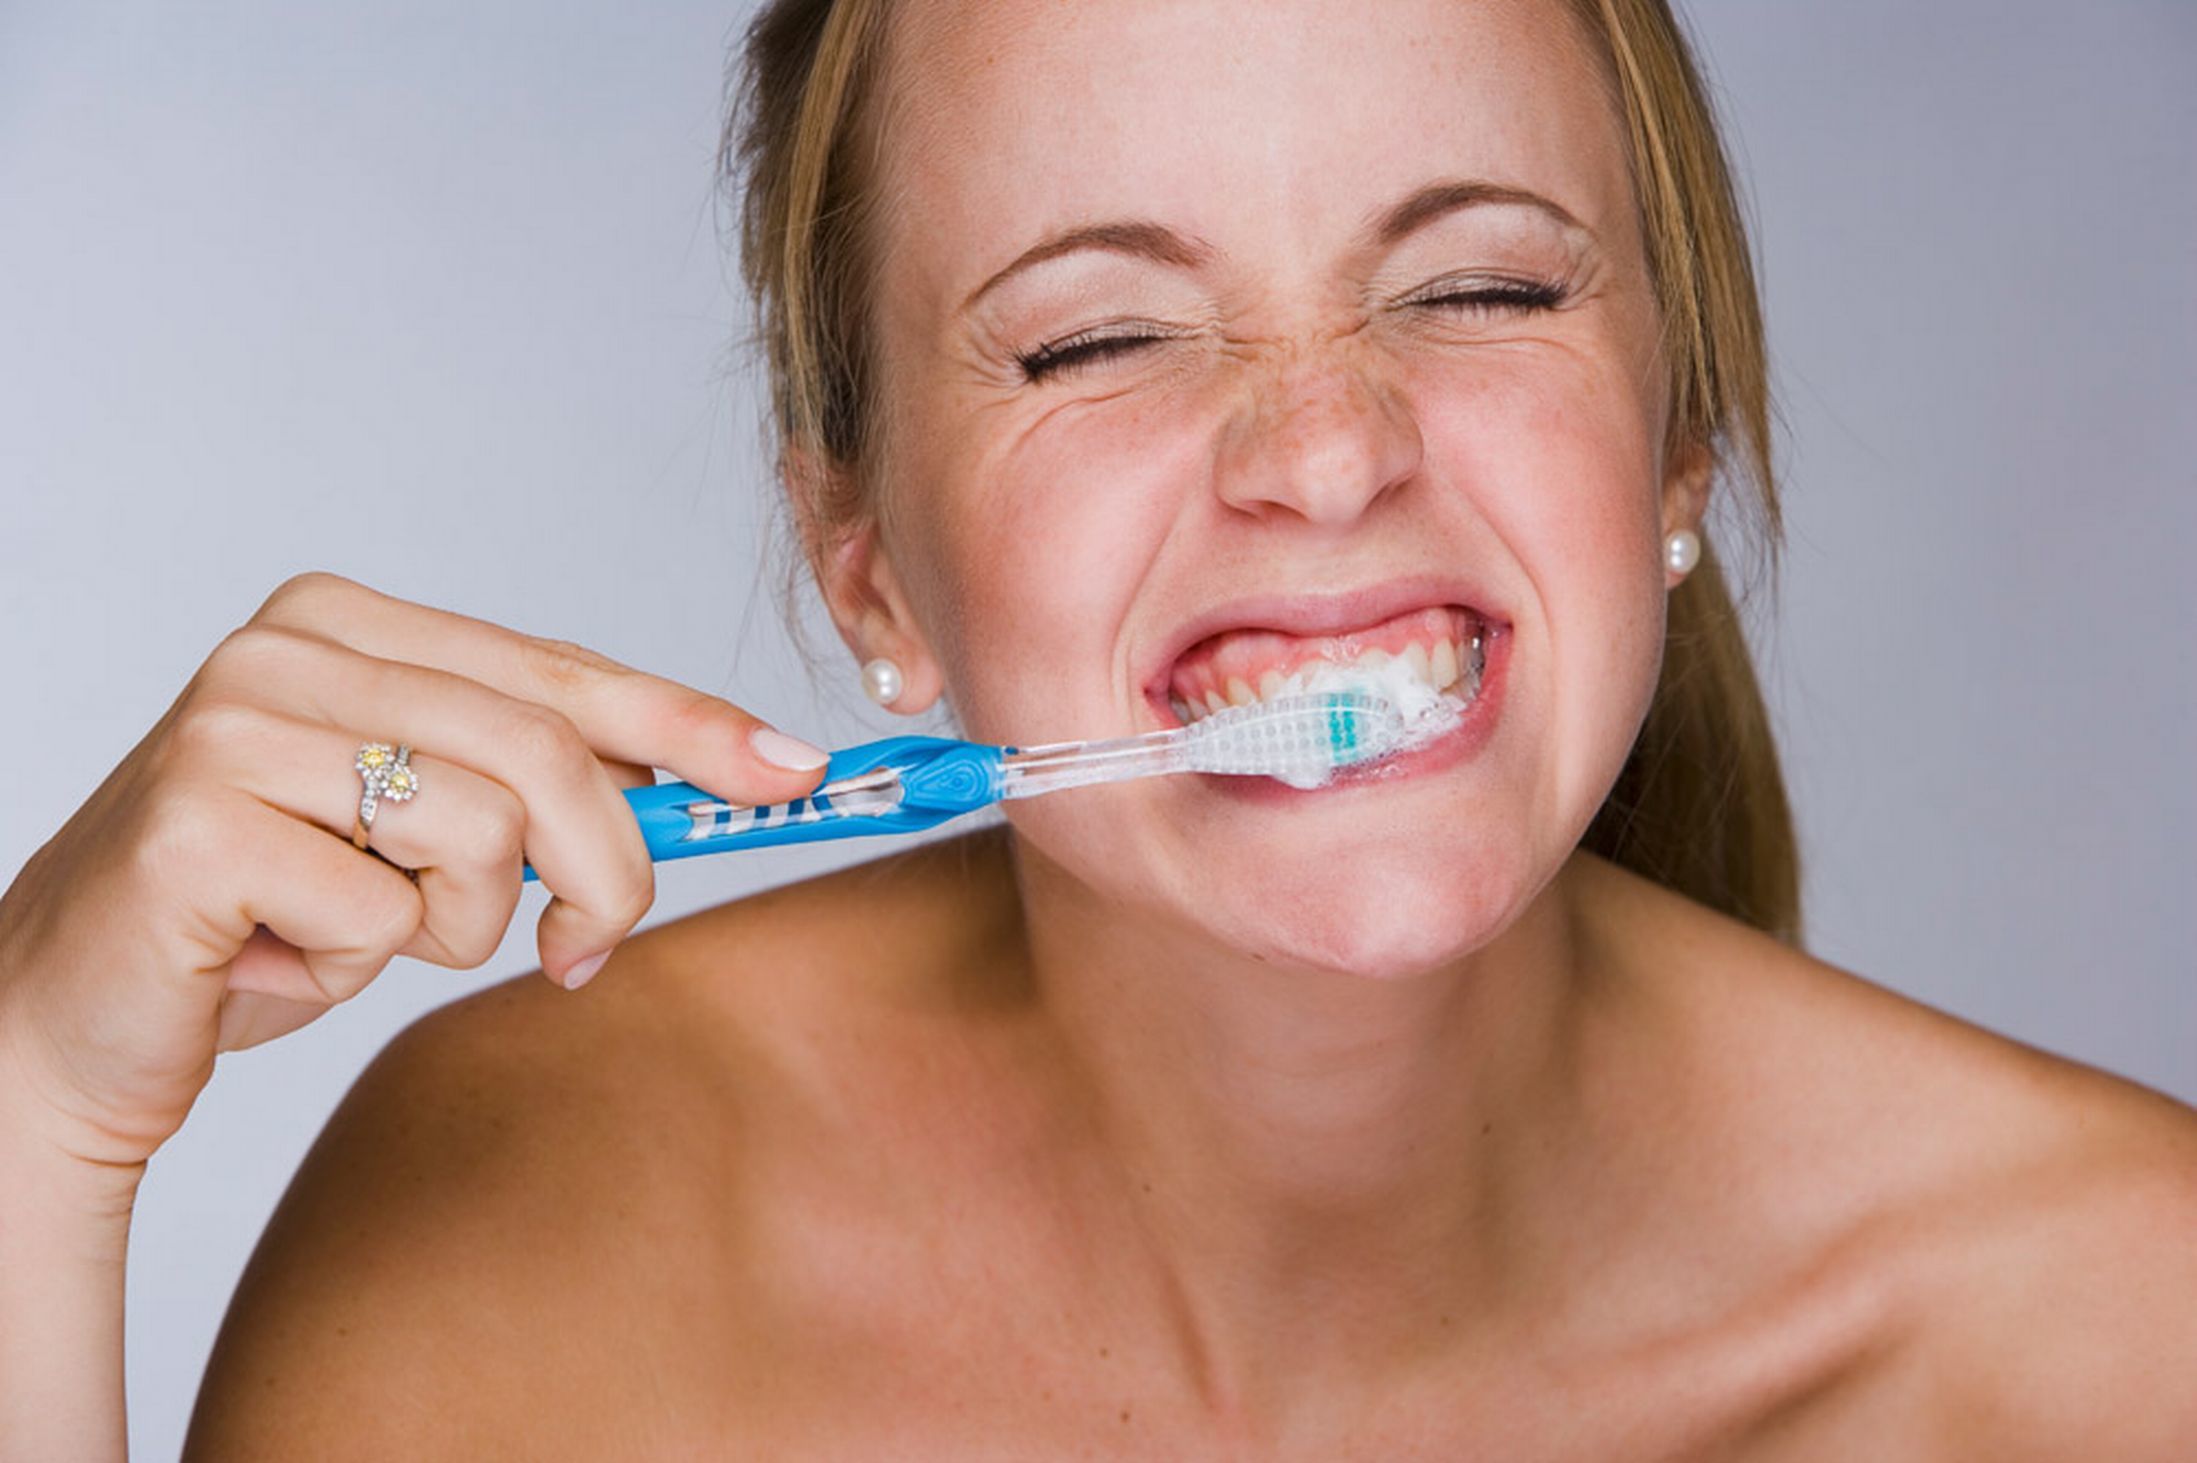 Чистка зубов зубной щеткой